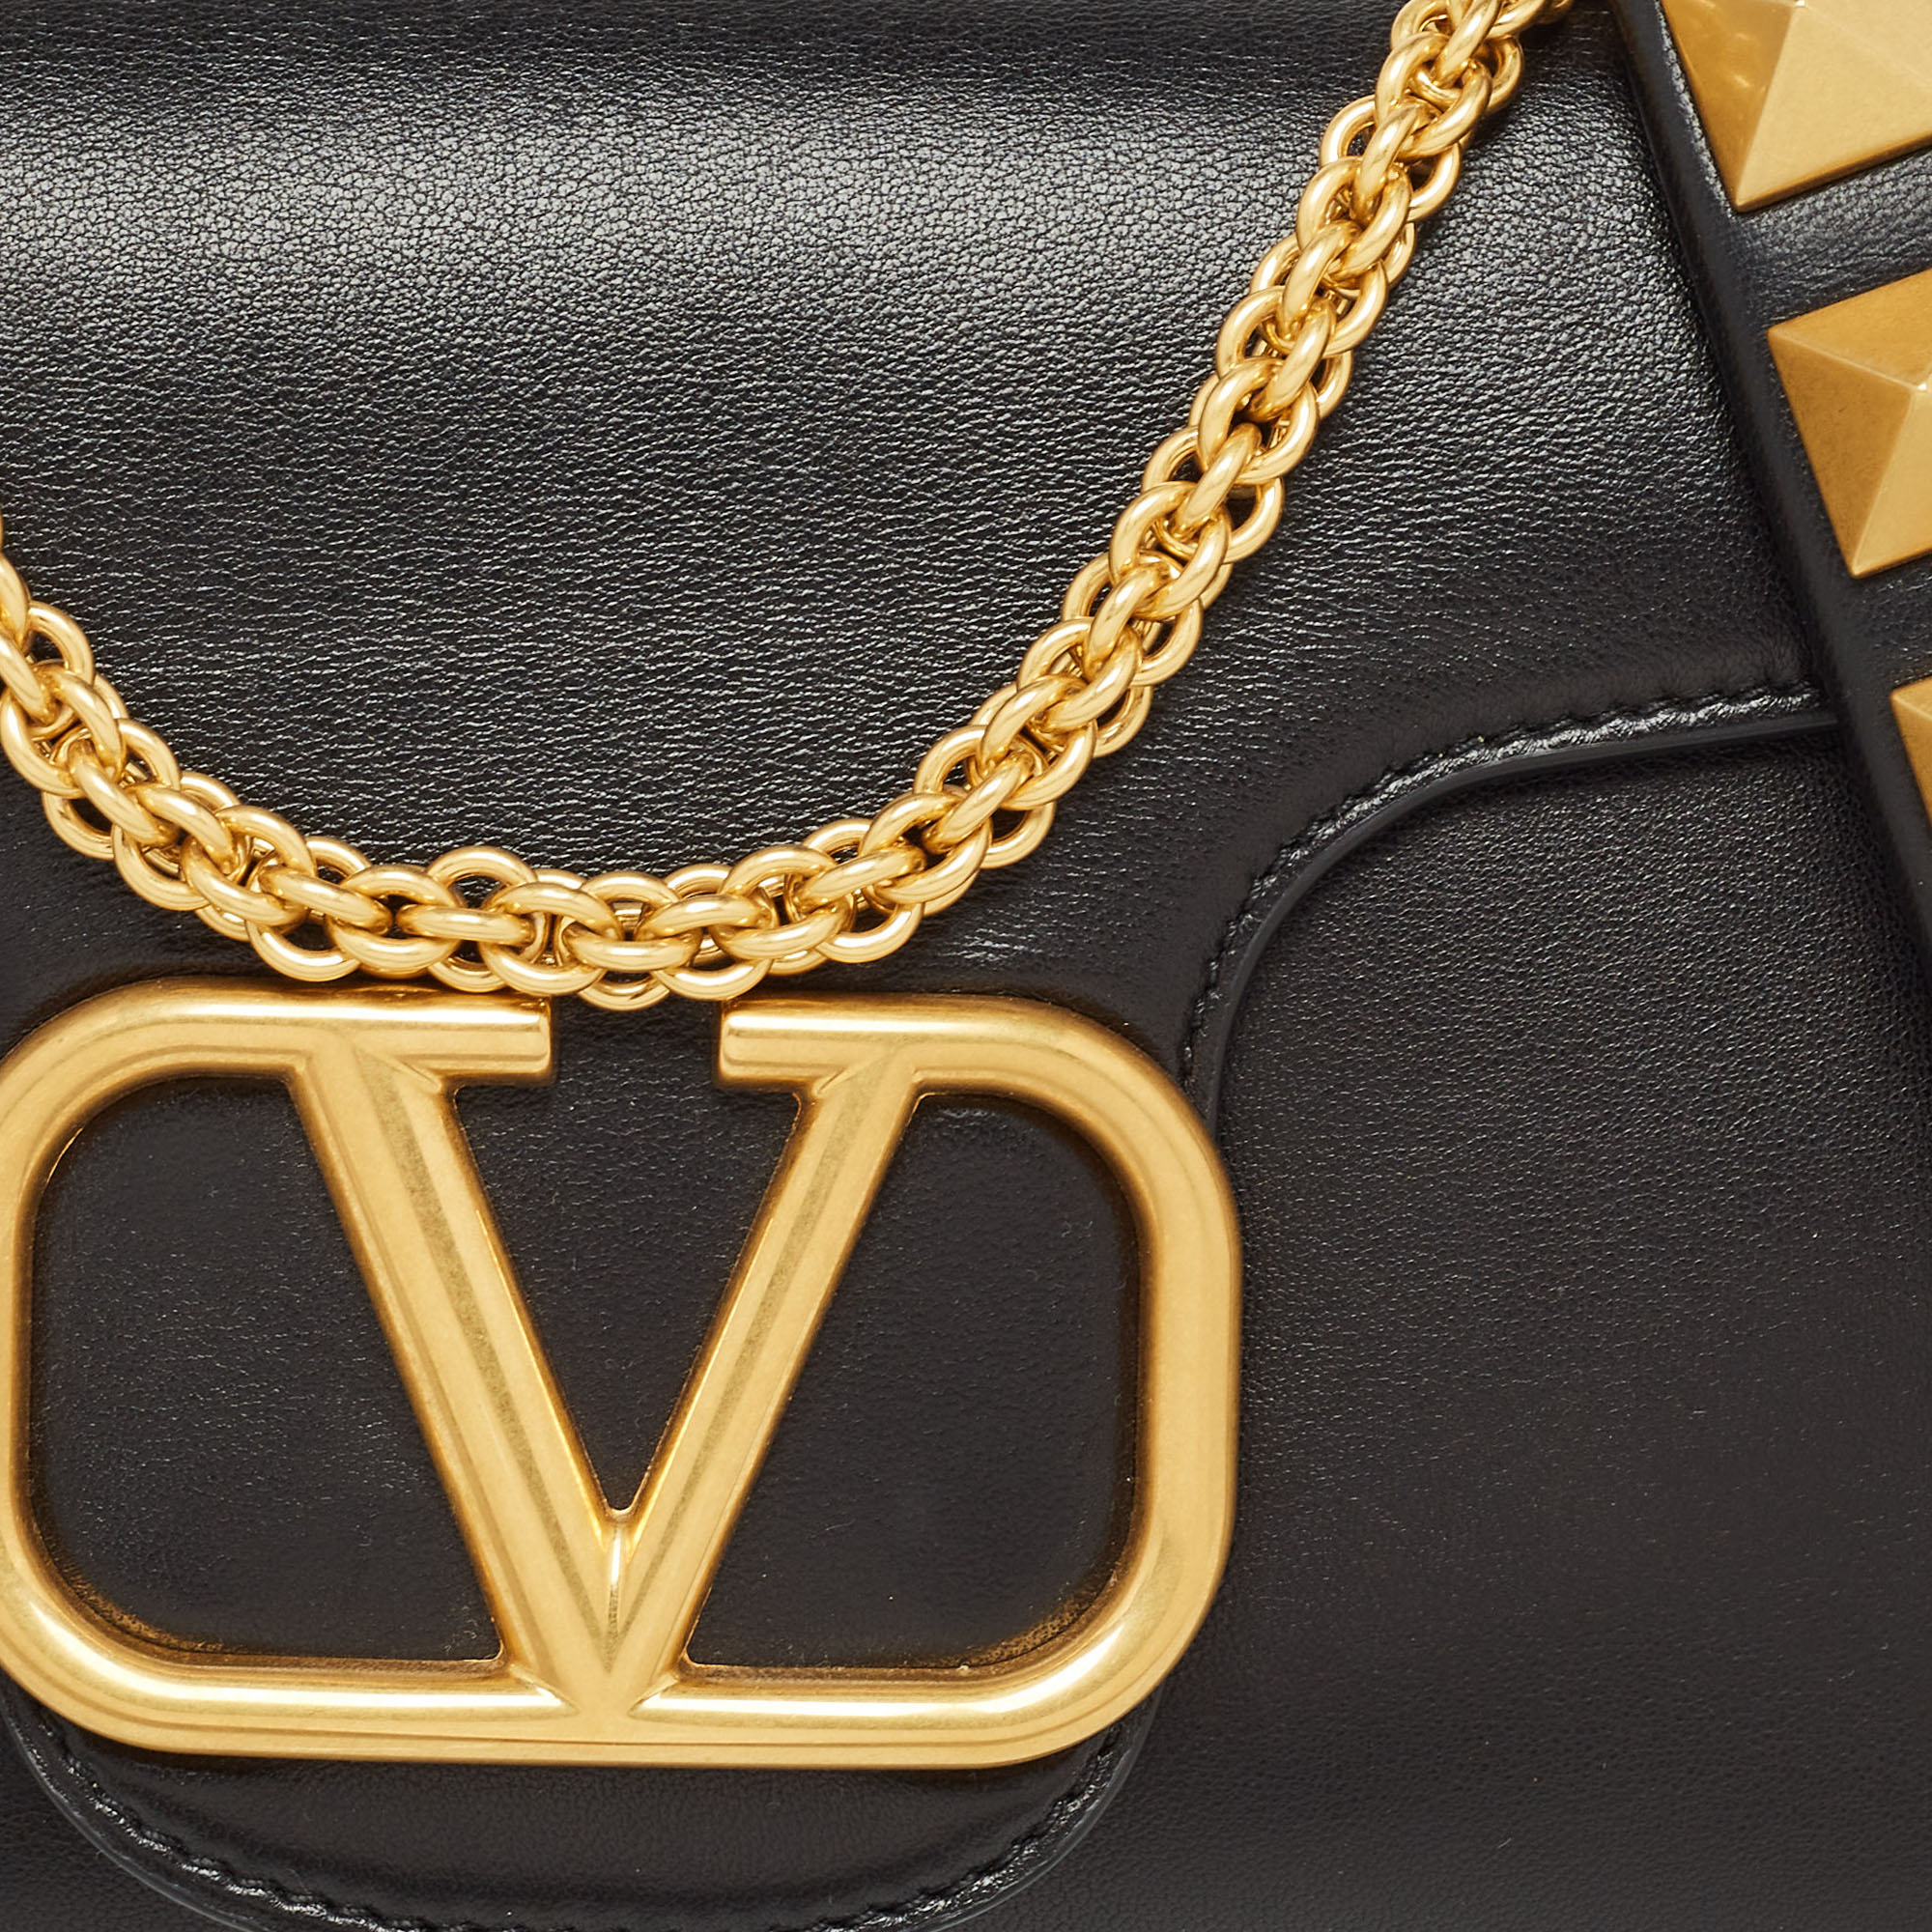 Valentino Black Leather VLogo Sign Shoulder Bag